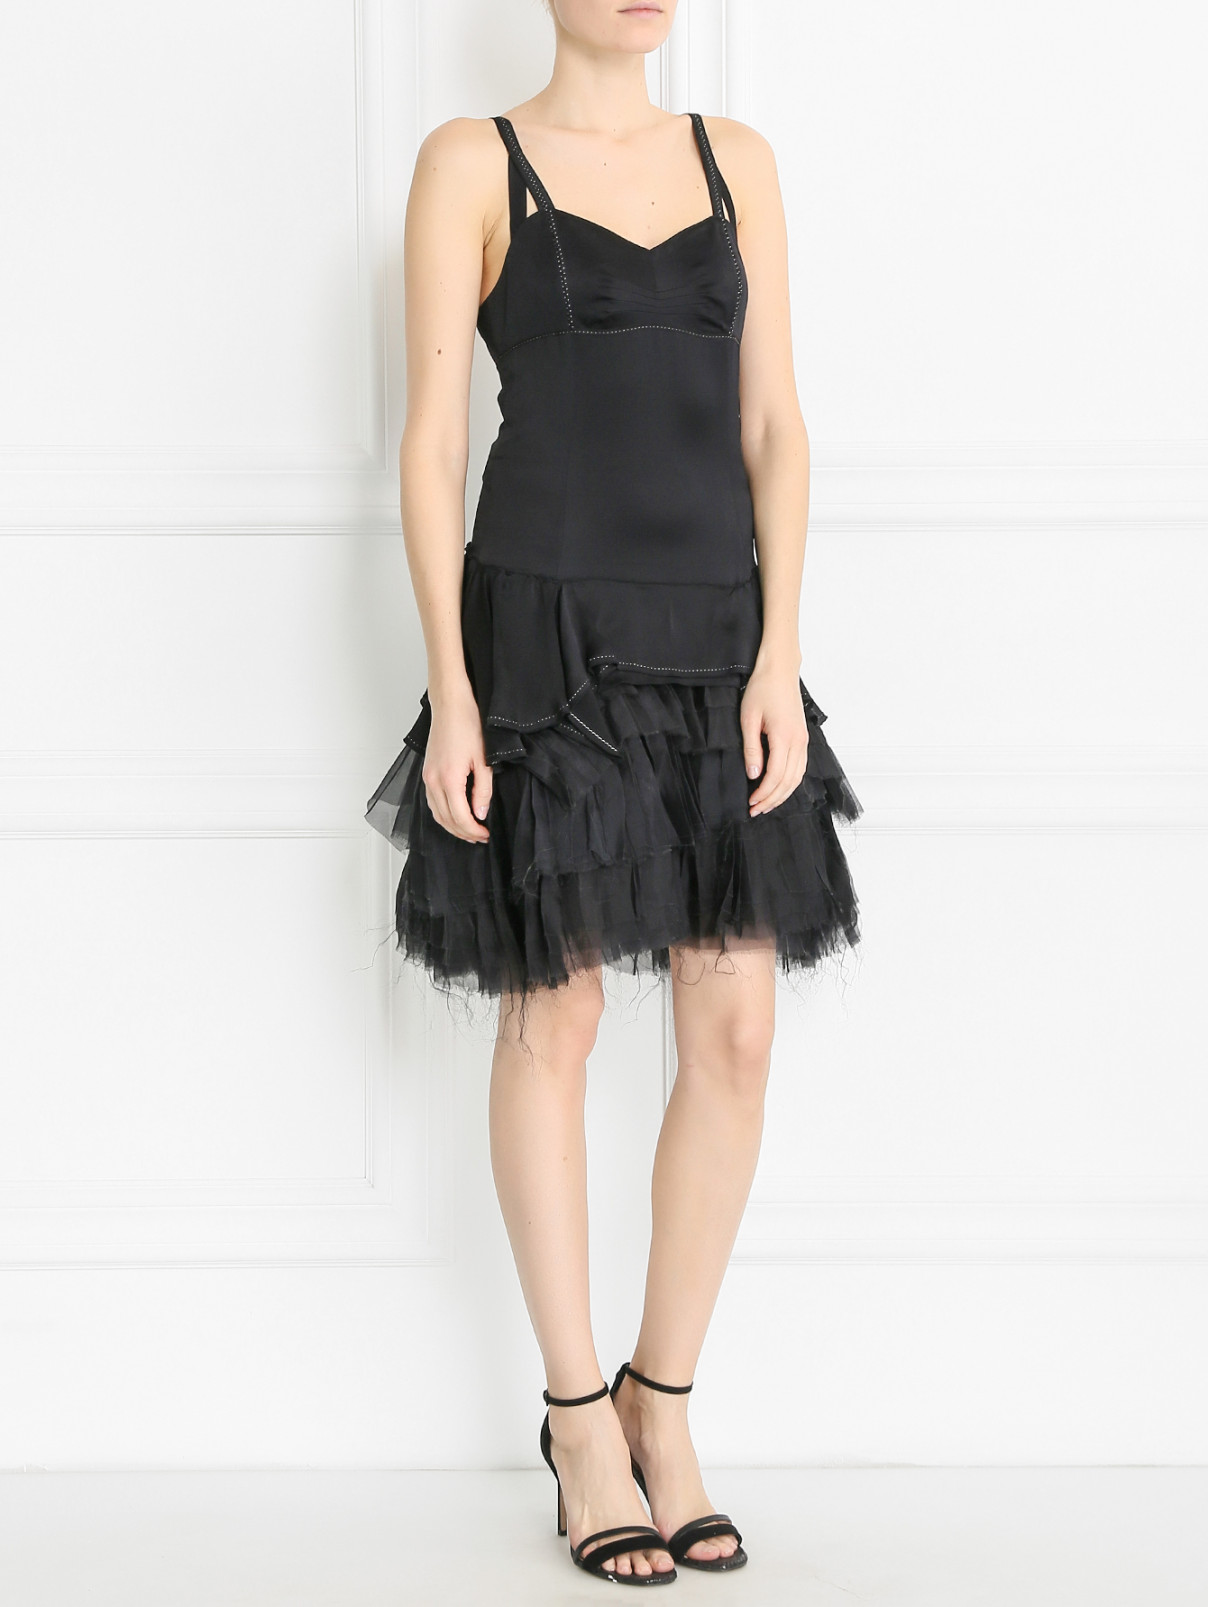 Платье-мини из шелка с юбкой-пачкой Marthe+Francois Girbaud  –  Модель Общий вид  – Цвет:  Черный